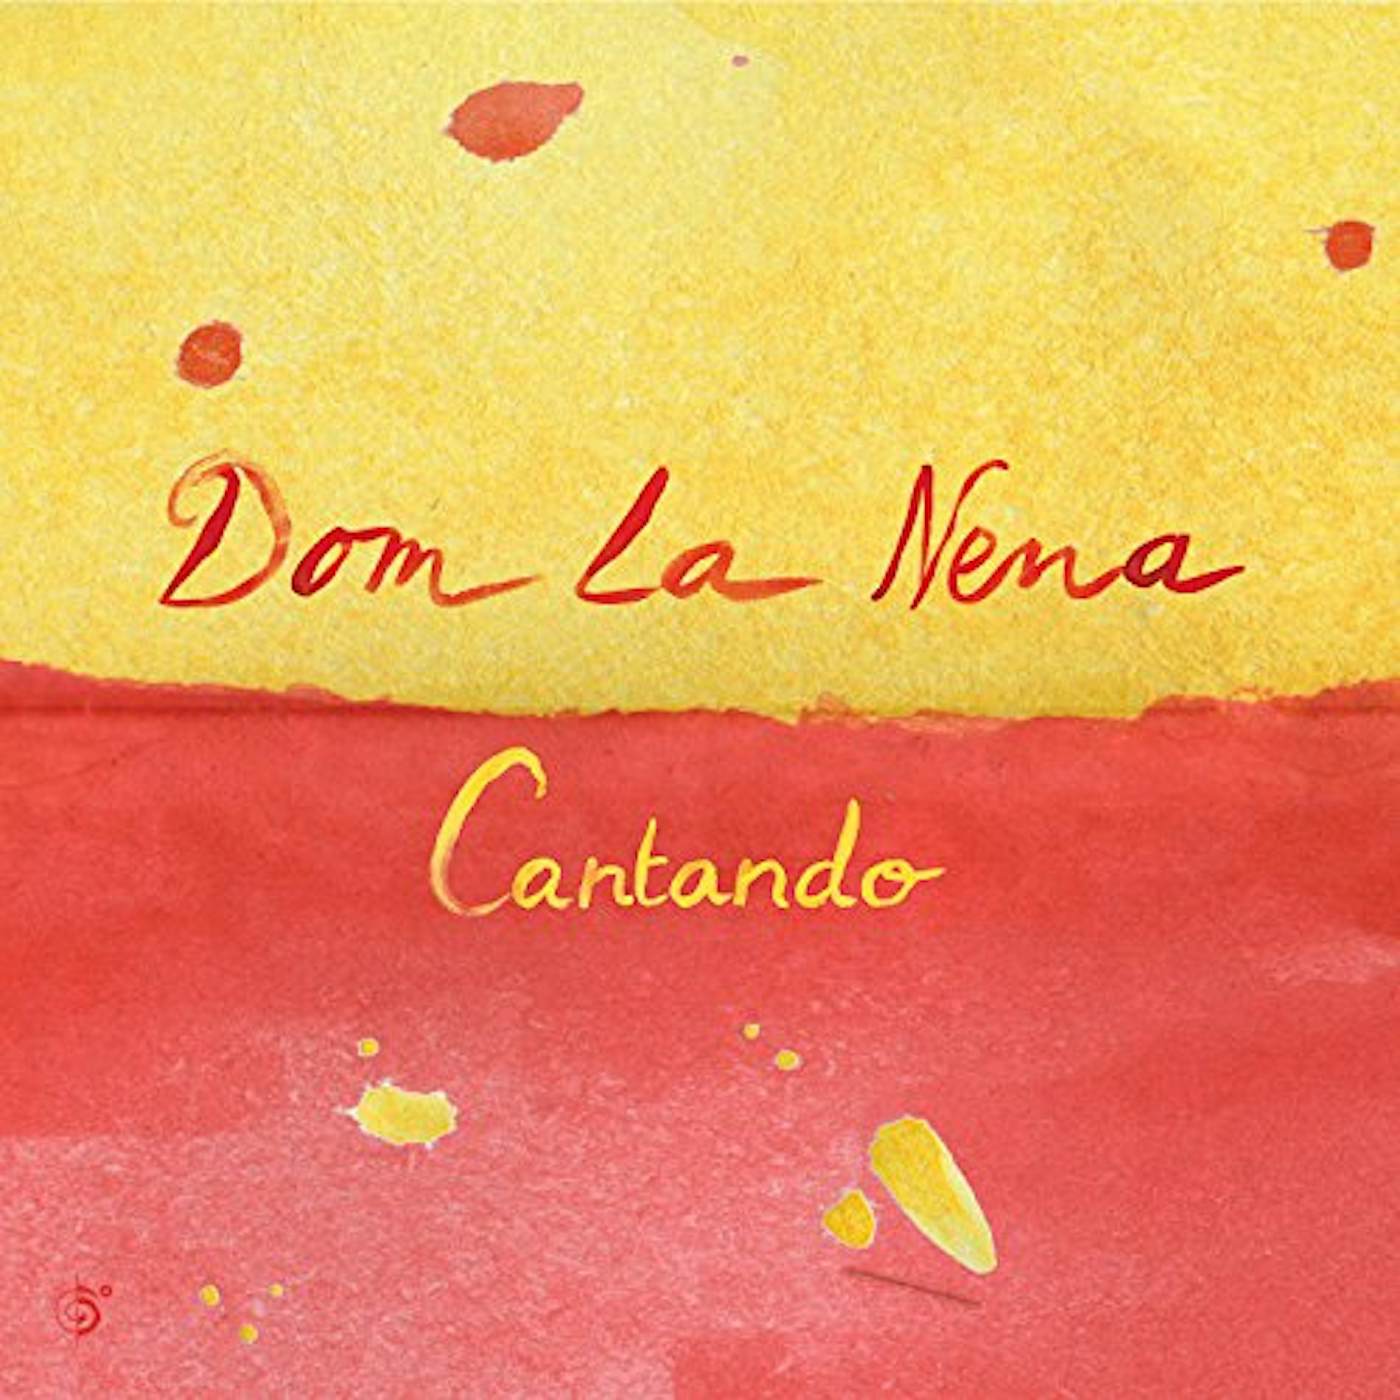 Dom La Nena Cantando Vinyl Record